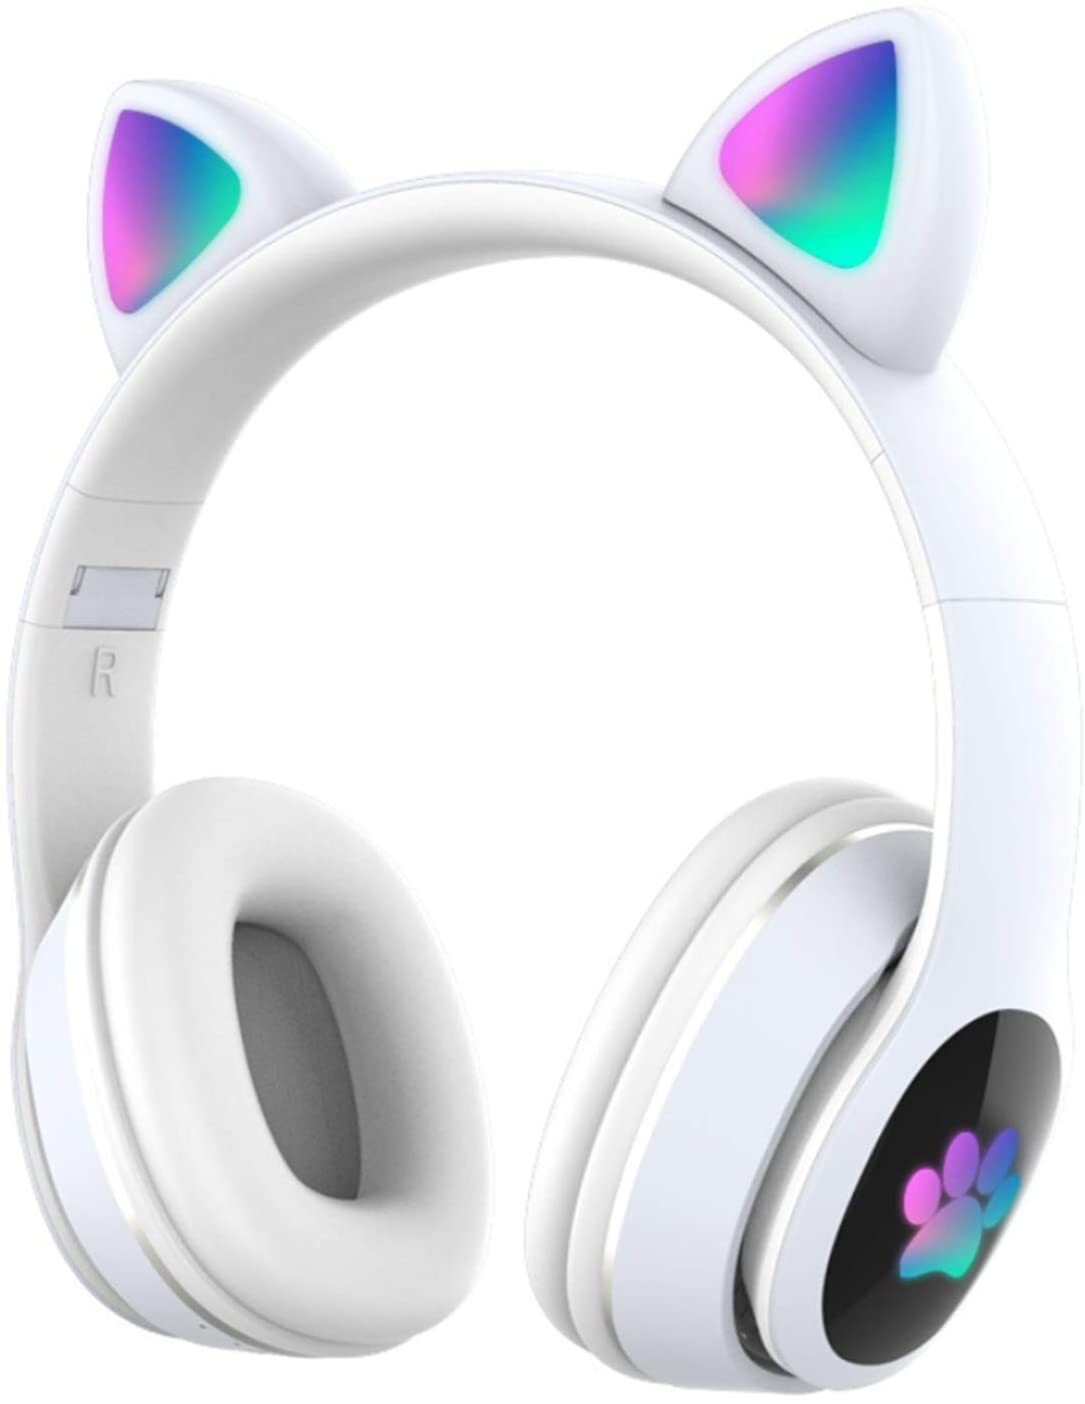 Купить наушники в гомеле. You Cat - l400 наушники. Wireless наушники Cat Ear Headphones-206. Наушники Wireless Headset с ушками. Беспроводные наушники кошачьи ушки.